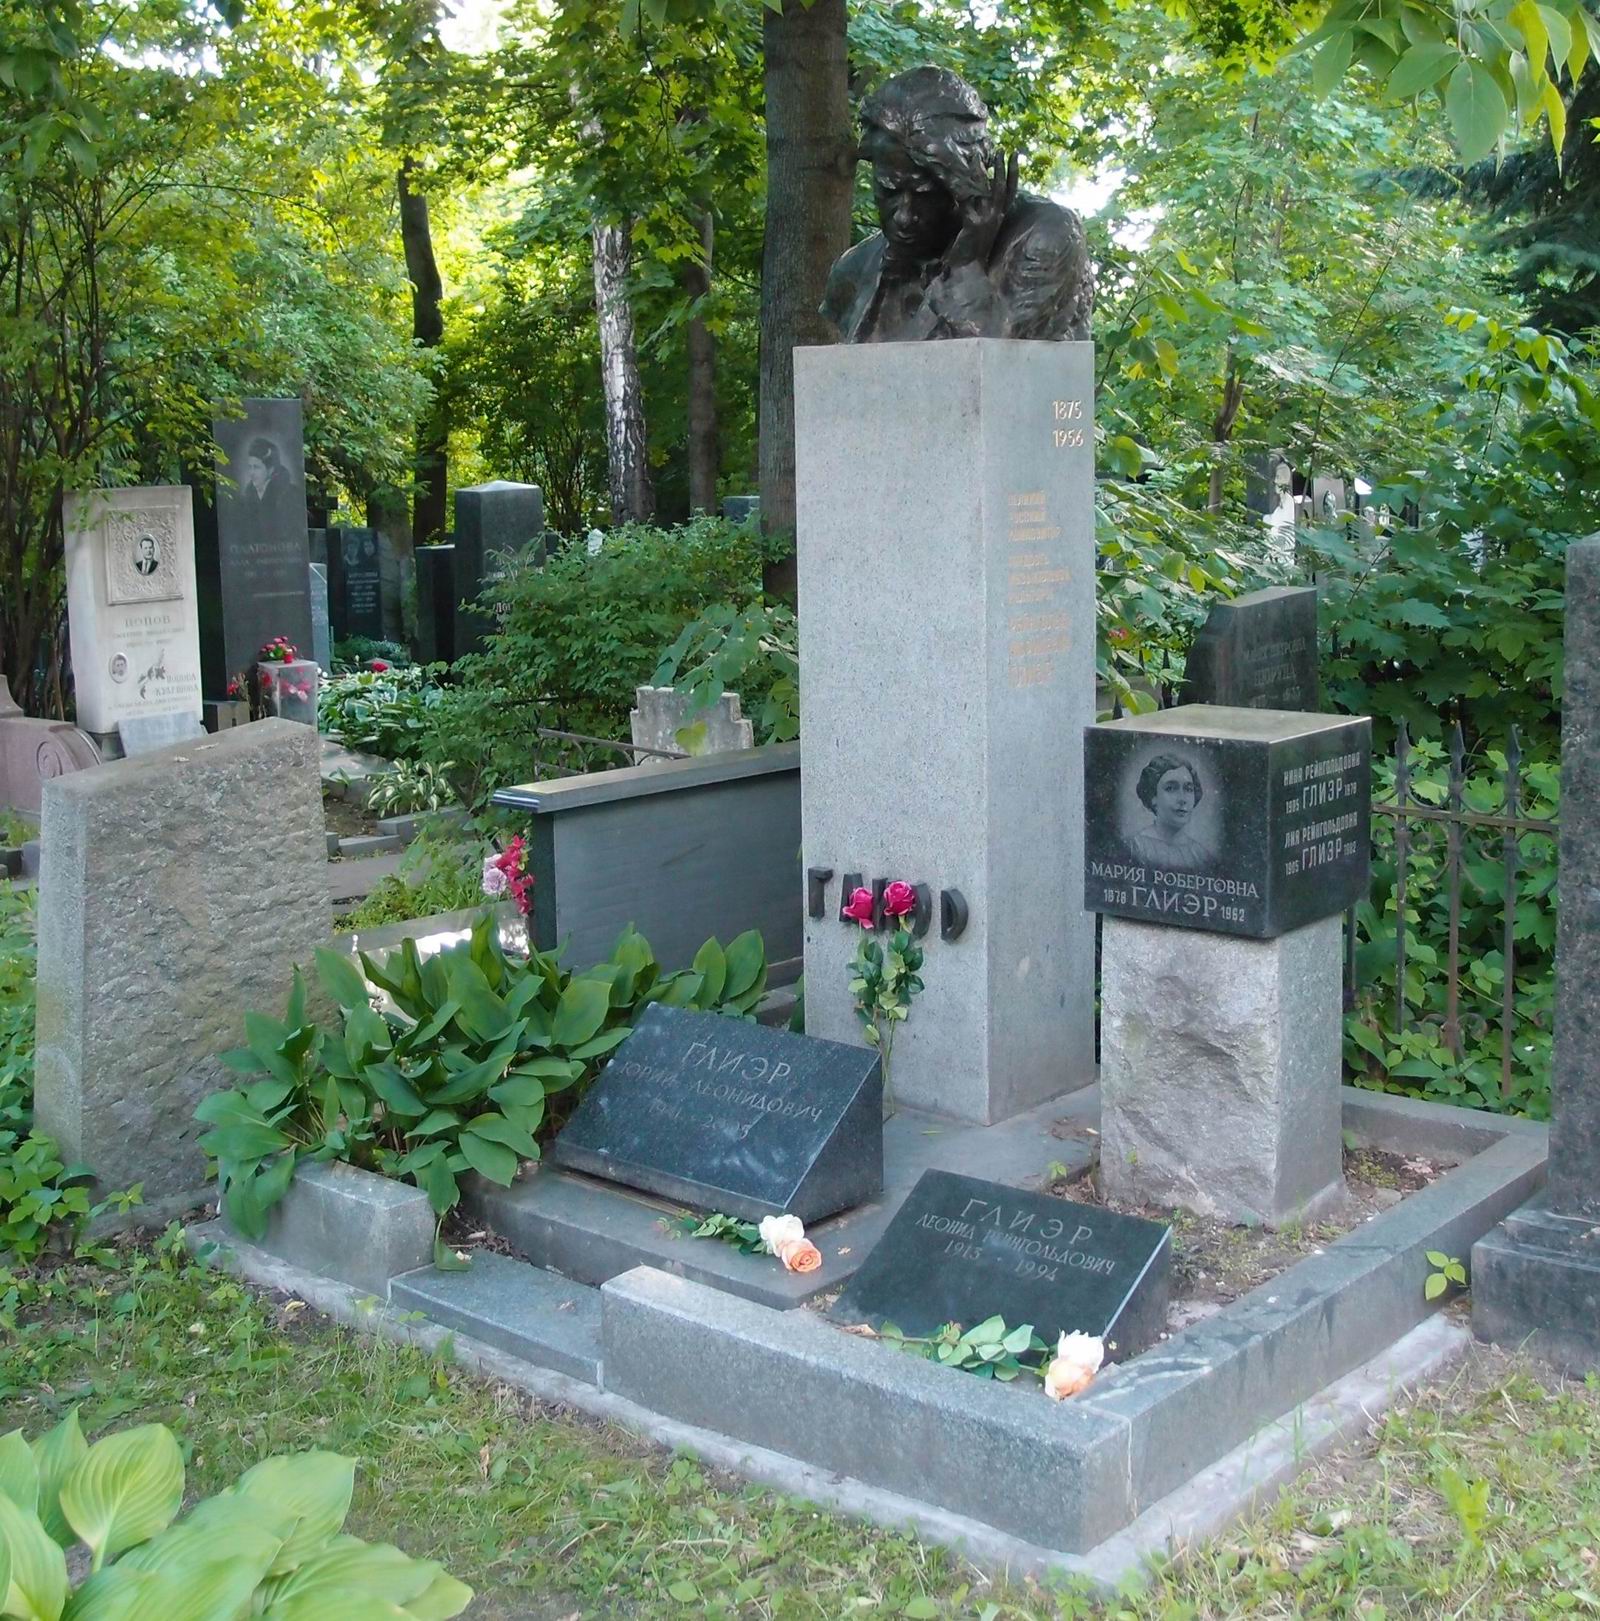 Памятник на могиле Глиэра Р.М. (1875-1956), ск. М.Аникушин, арх. В.Петров, на Новодевичьем кладбище (3-63-39а). Нажмите левую кнопку мыши чтобы увидеть фрагмент памятника.